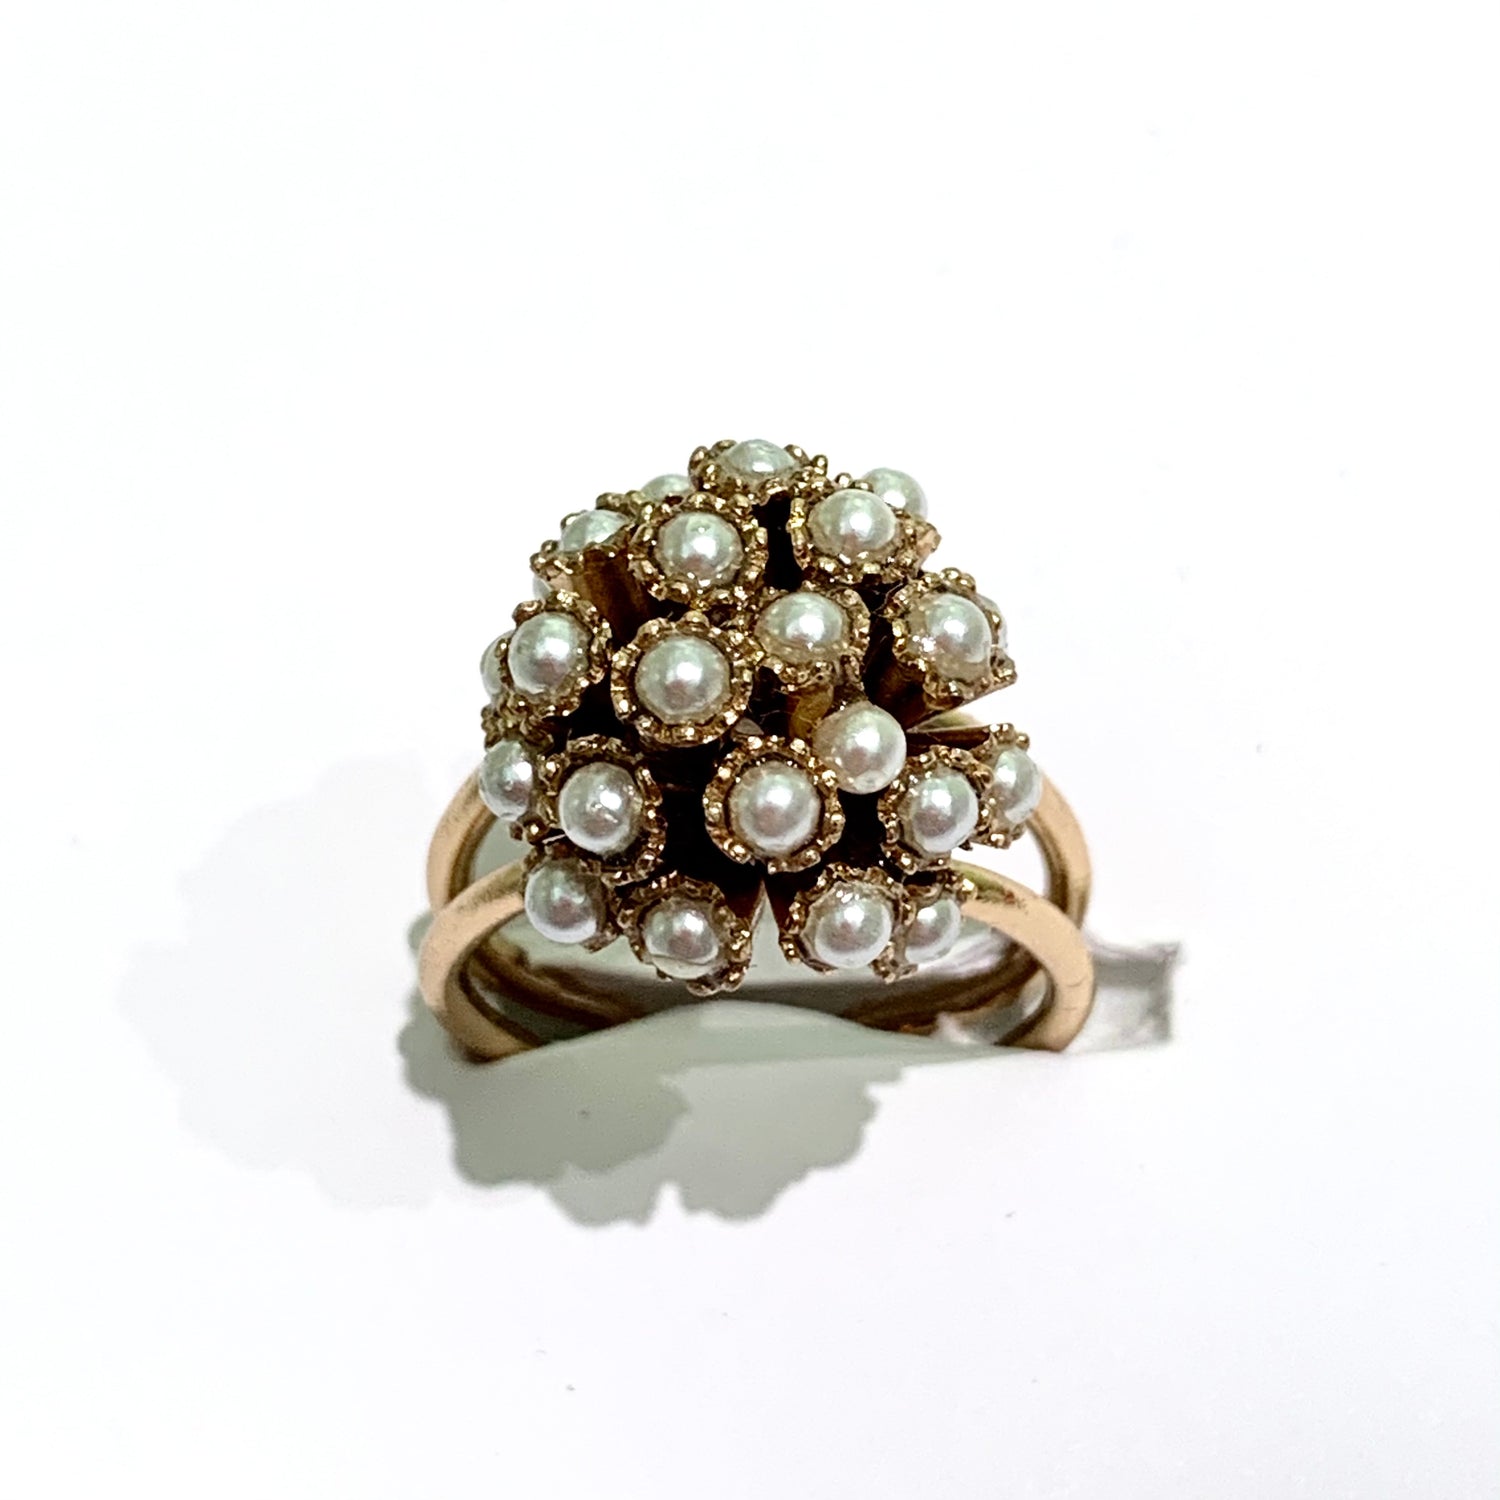 Anello in bijoux bagnato in oro con mora ricoperta da perle coltivate.  Misura regolabile da 11 a 15.  Dimensioni anello 1,5 cm di larghezza x 1 cm di altezza.